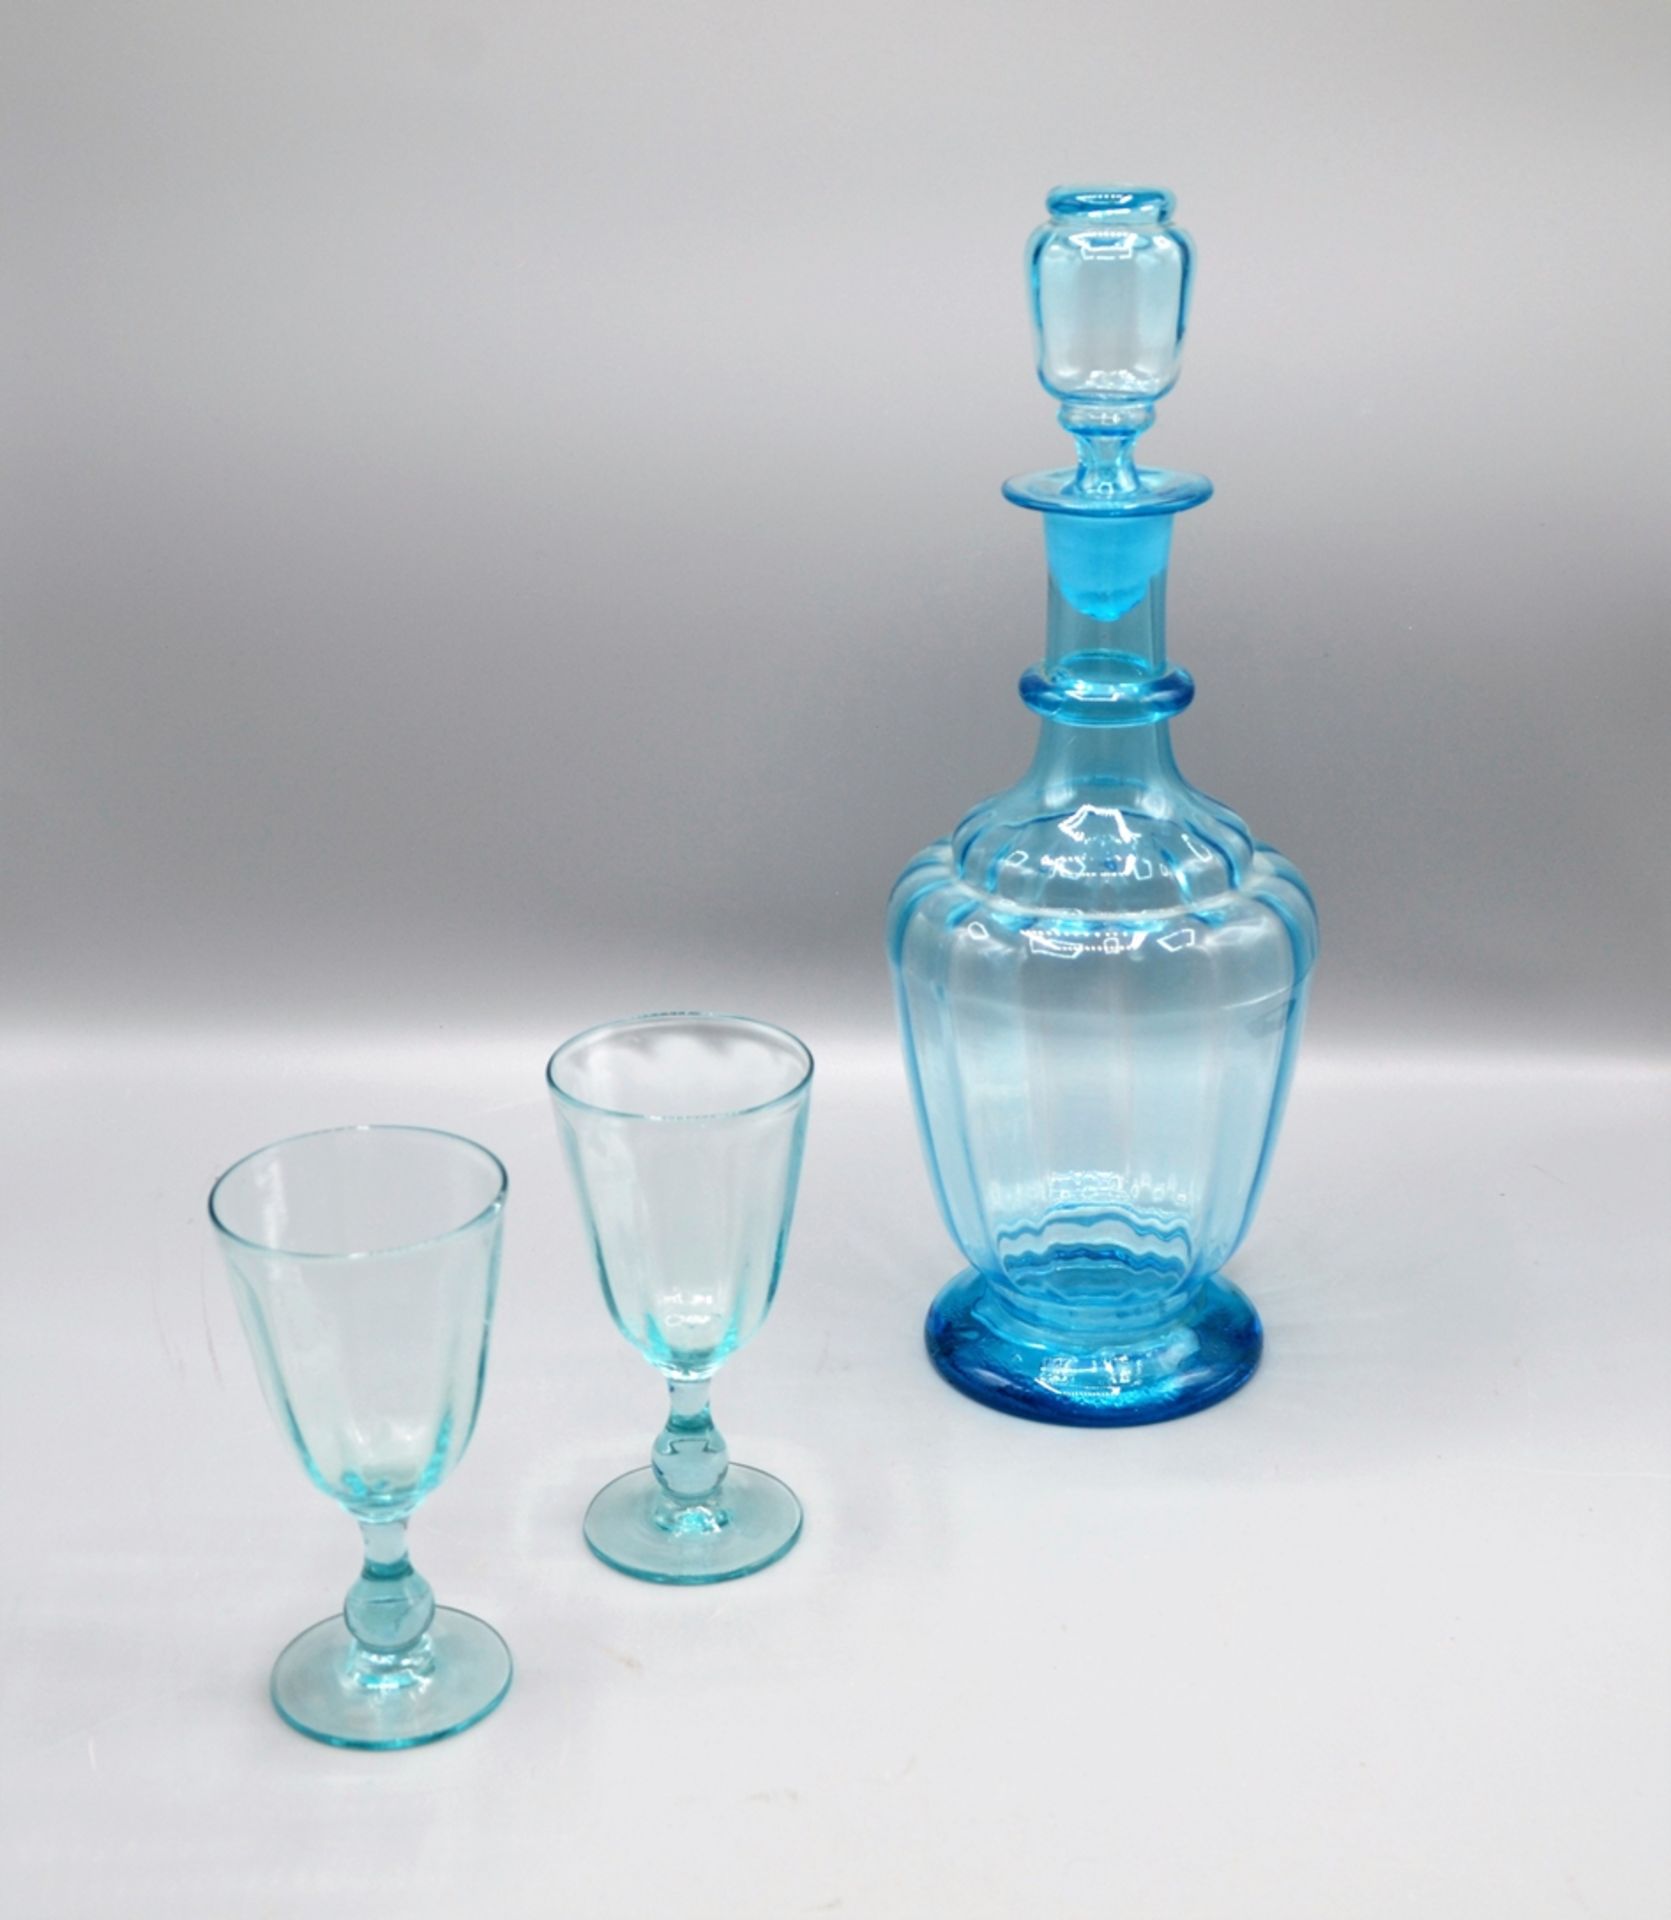 Rosenthal Joska etc. Glas Konvolut 6-teilig, darunter blaue mundgeblasene Karaffe u. 2 Becher um 19 - Bild 2 aus 2